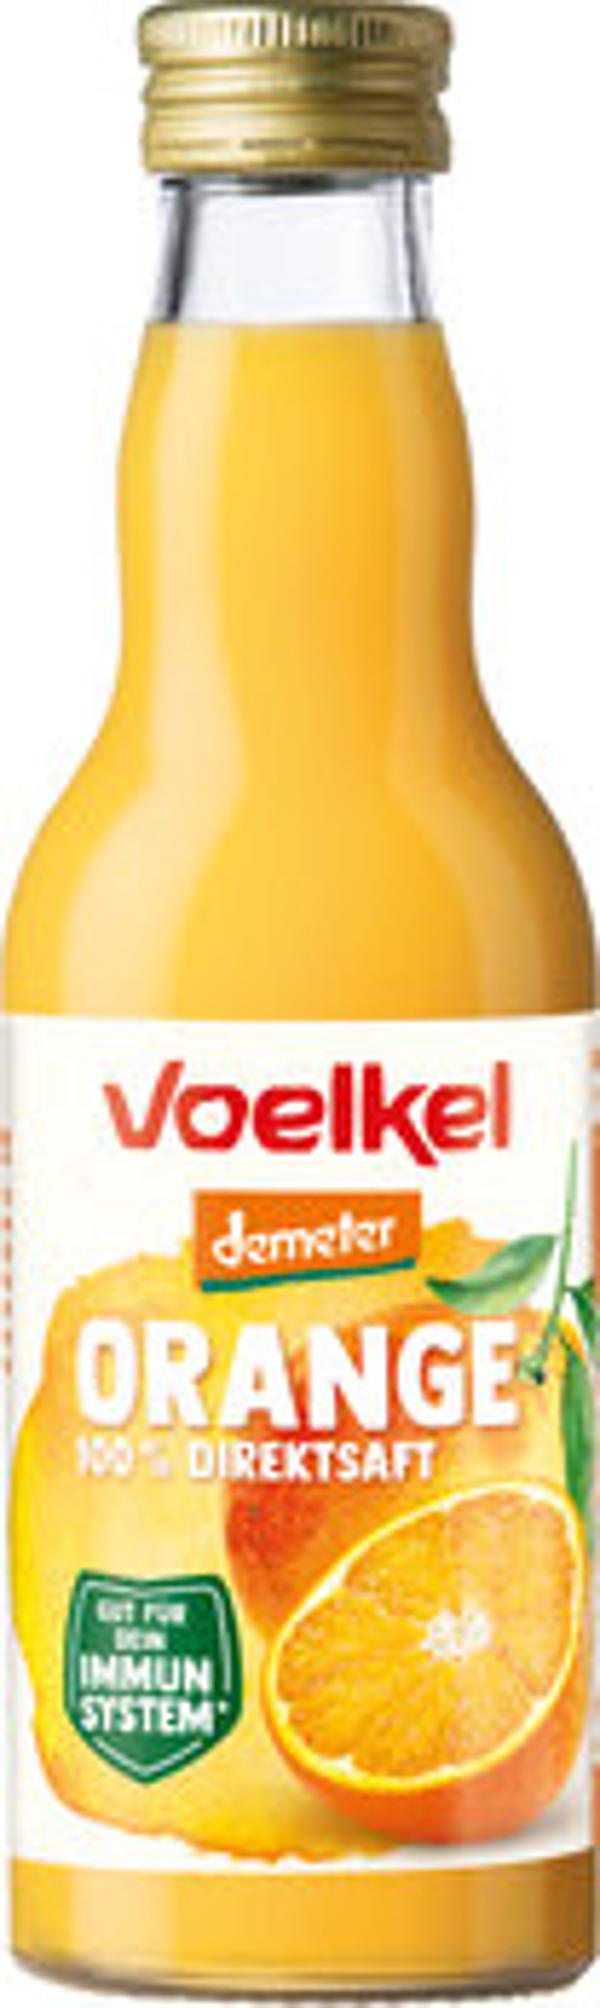 Produktbild von Voelkel Orangensaft 0,2l